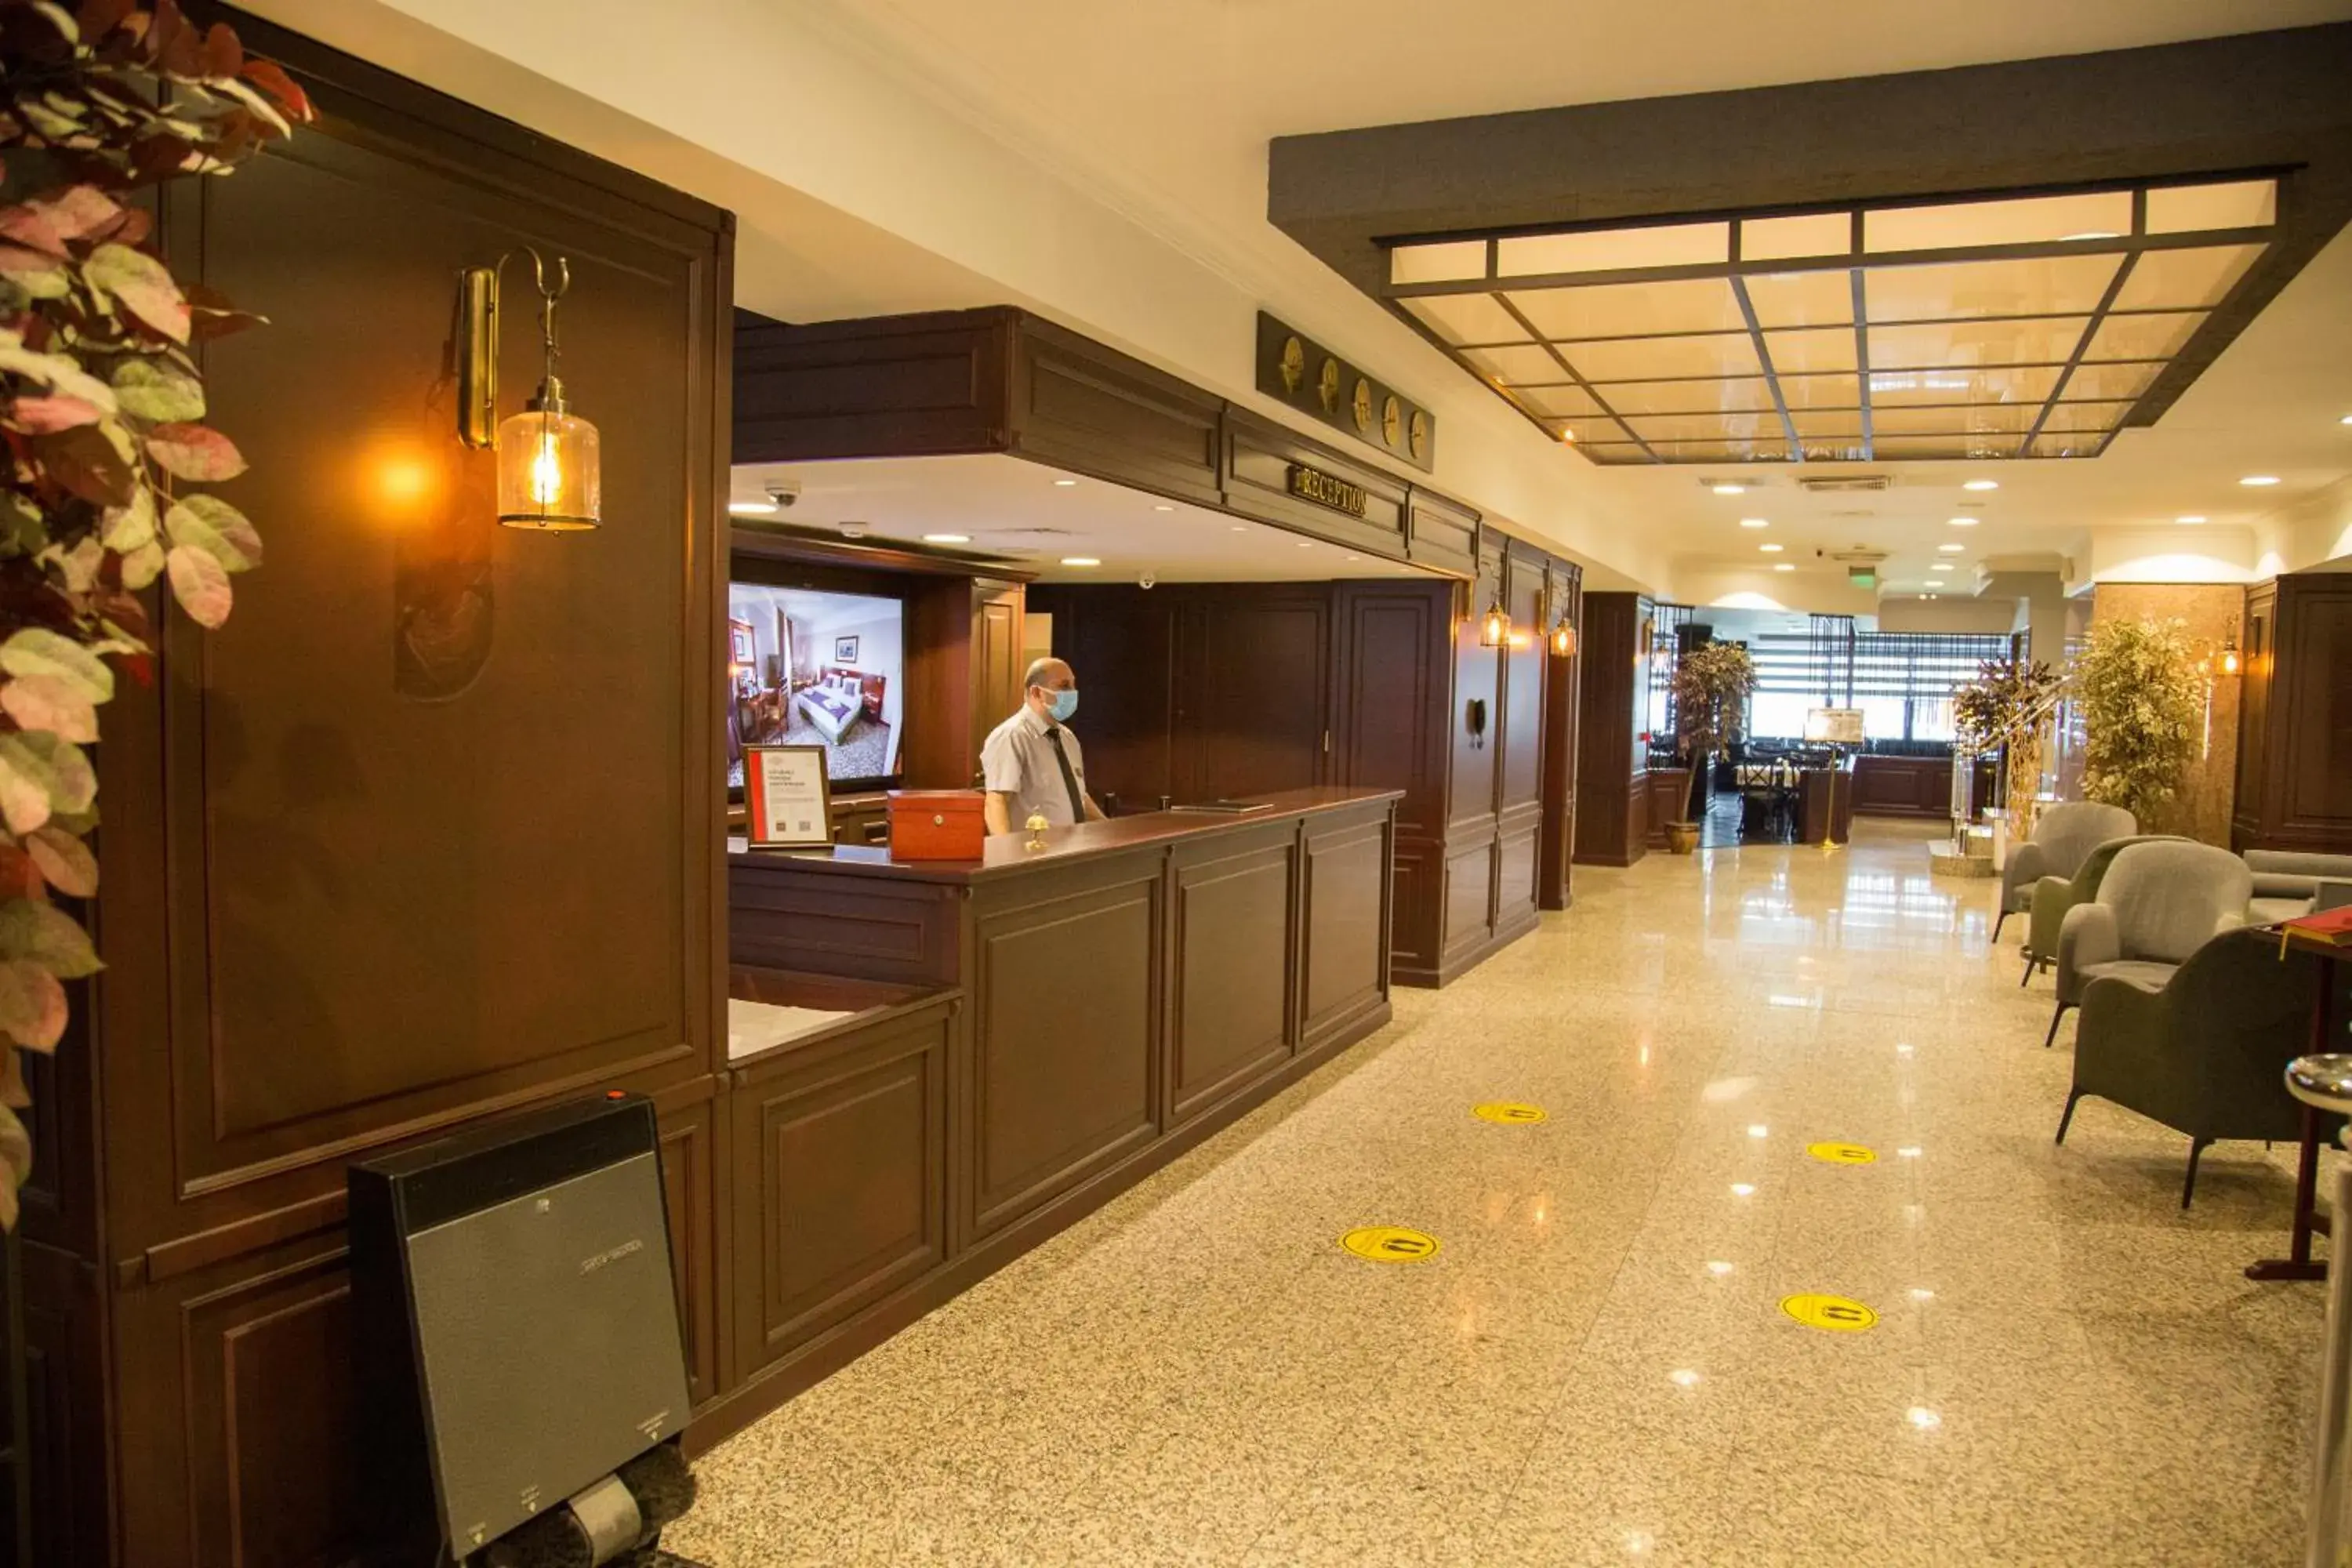 Lobby or reception in Dila Hotel